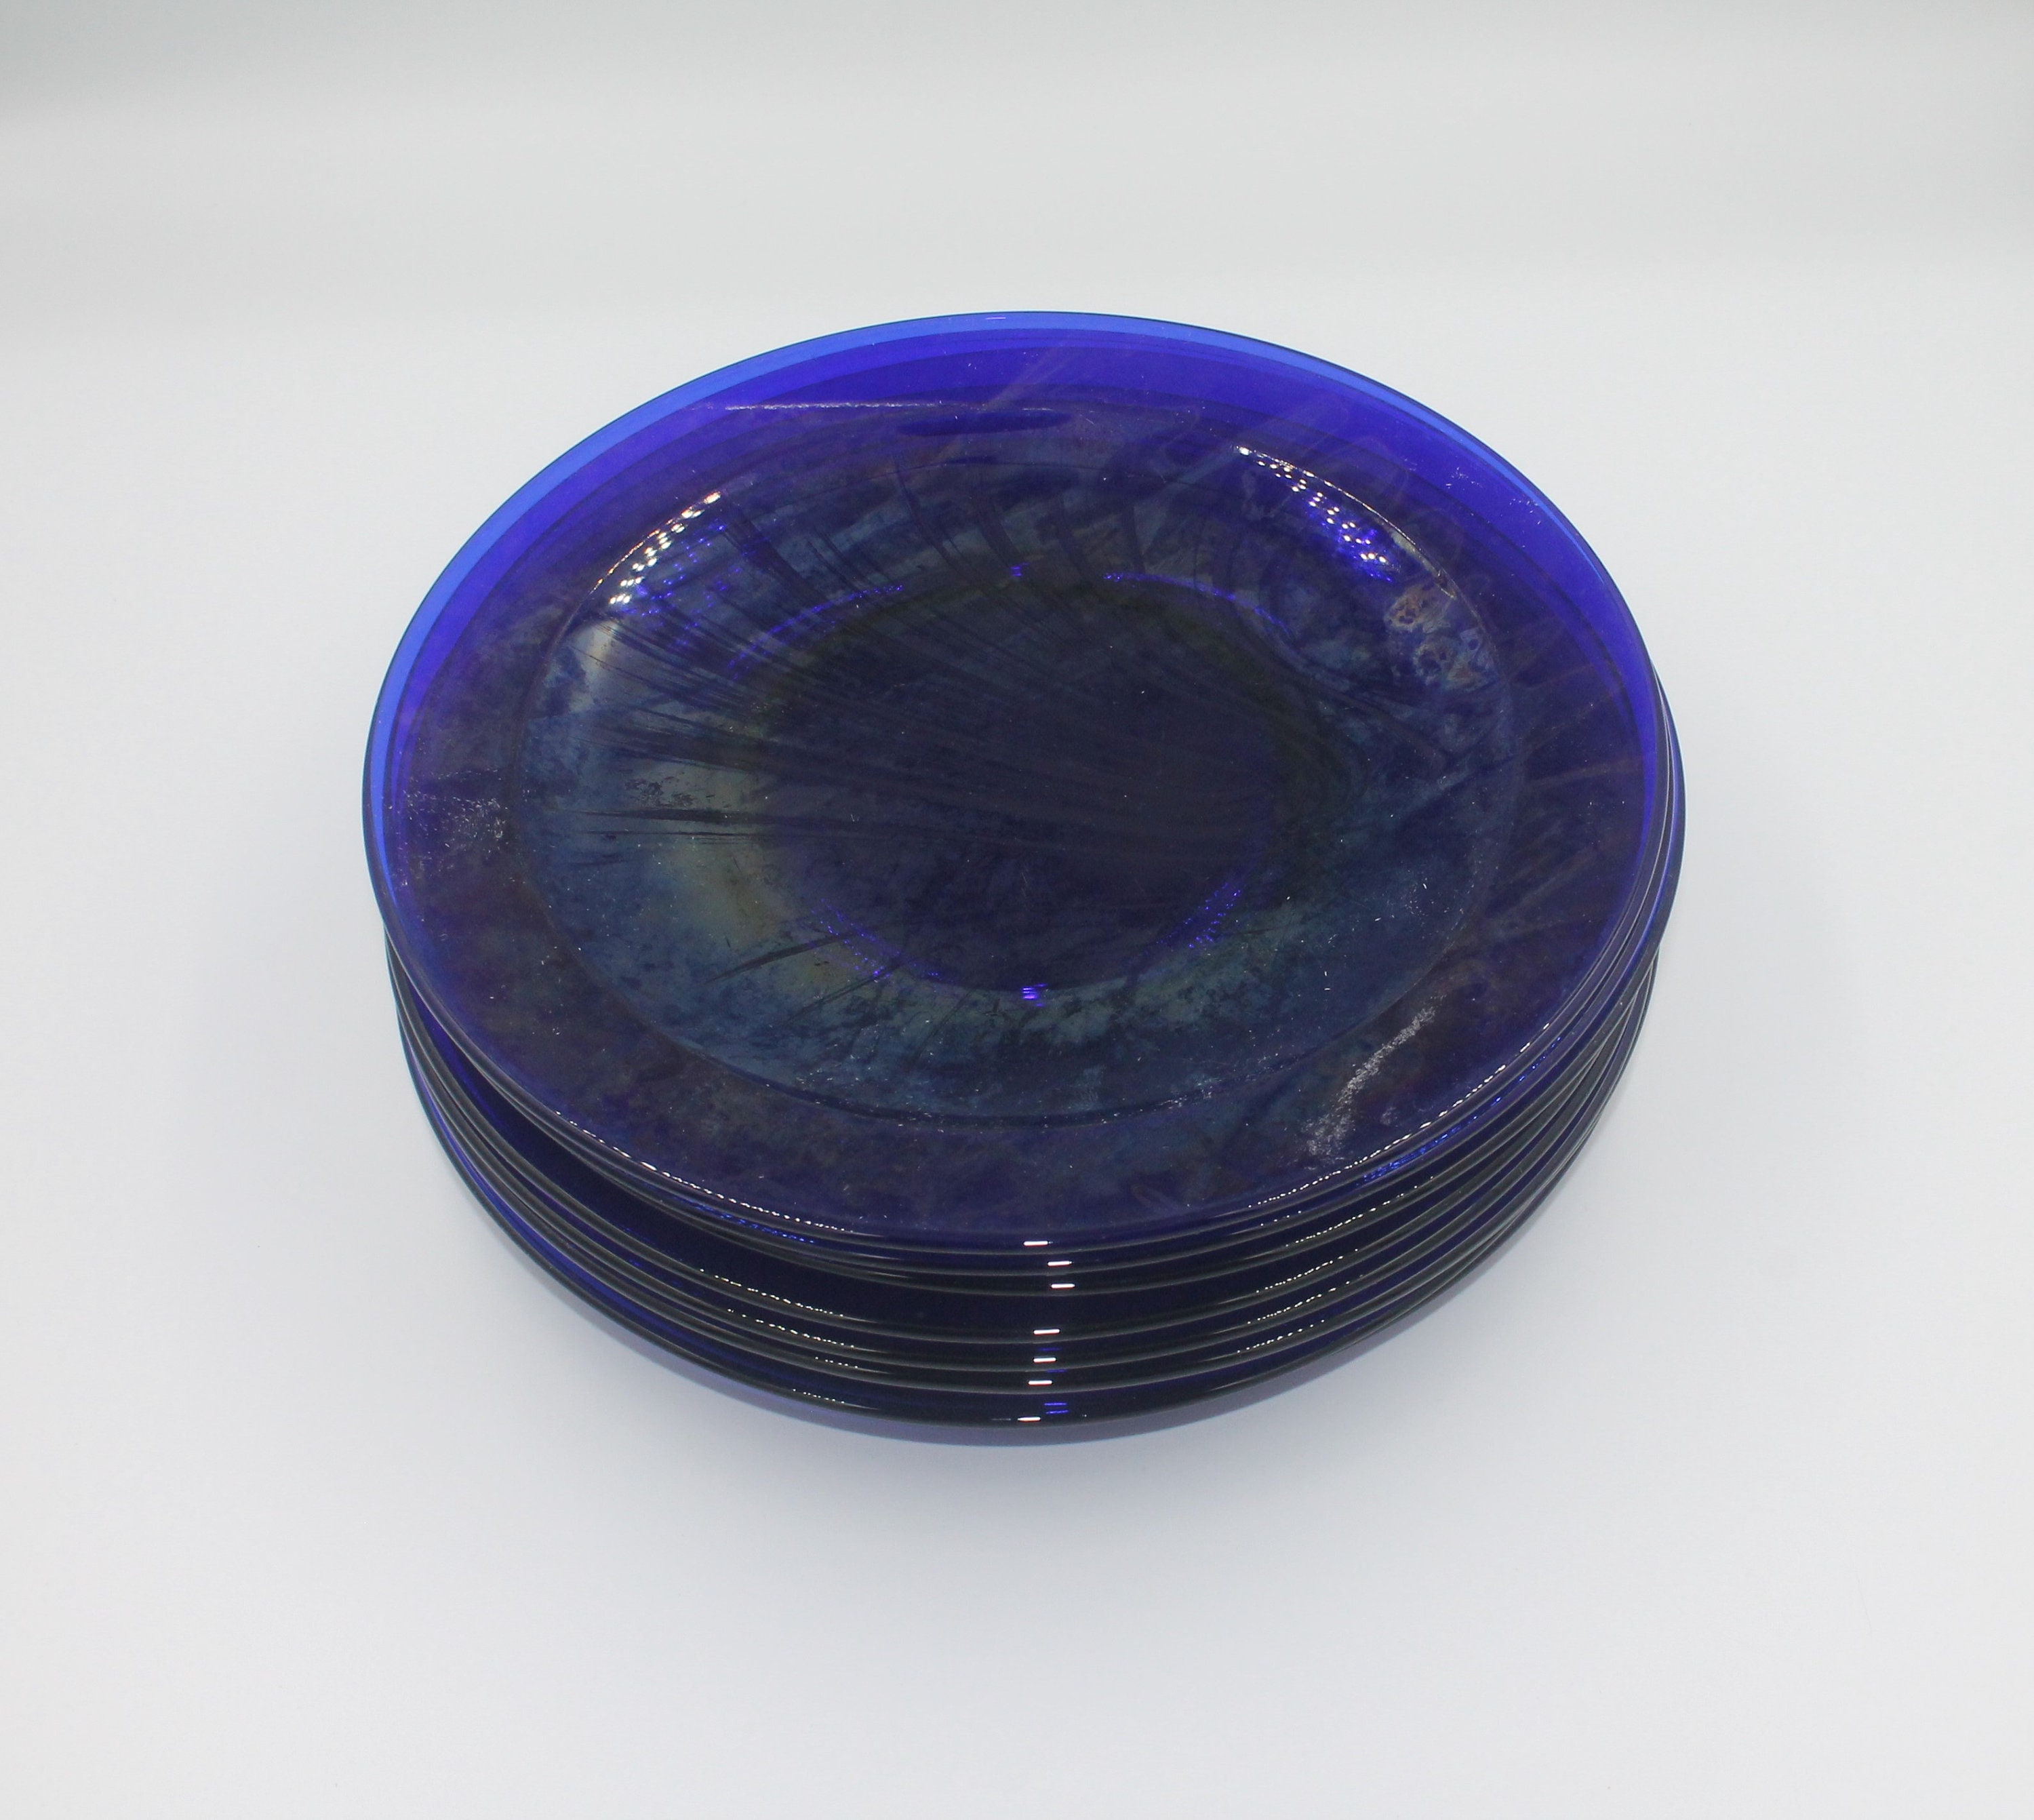 Normann Copenhagen Cosmic deep glass plate, 22 cm, blue